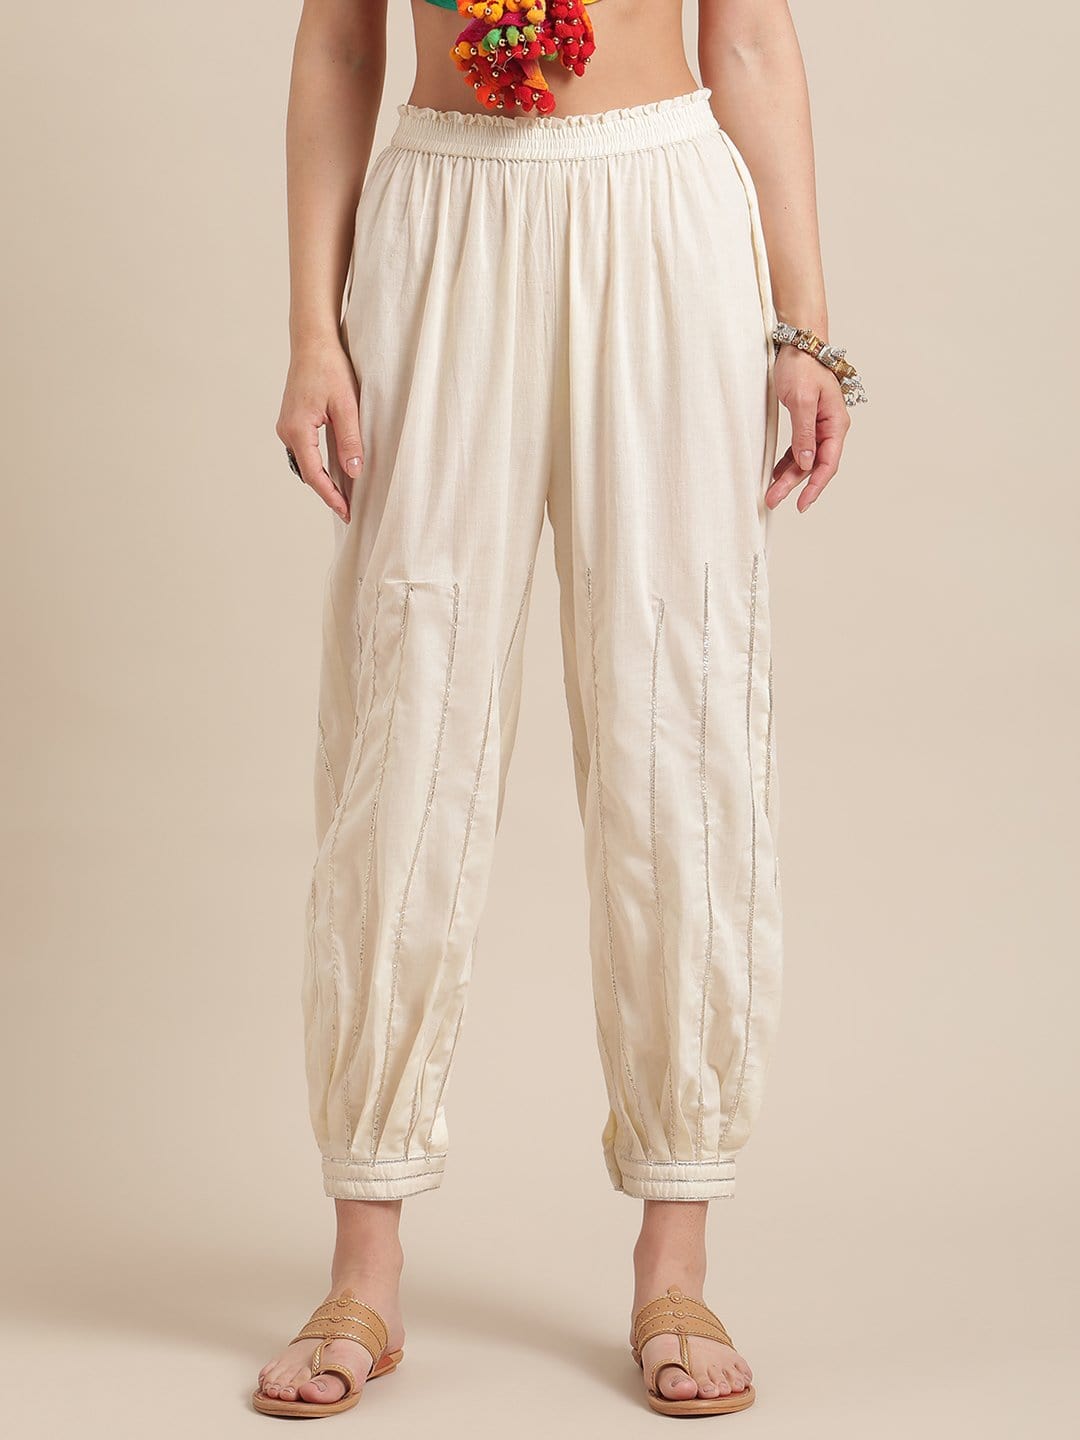 Dhoti Pants For Women Nightdress - Buy Dhoti Pants For Women Nightdress  online in India